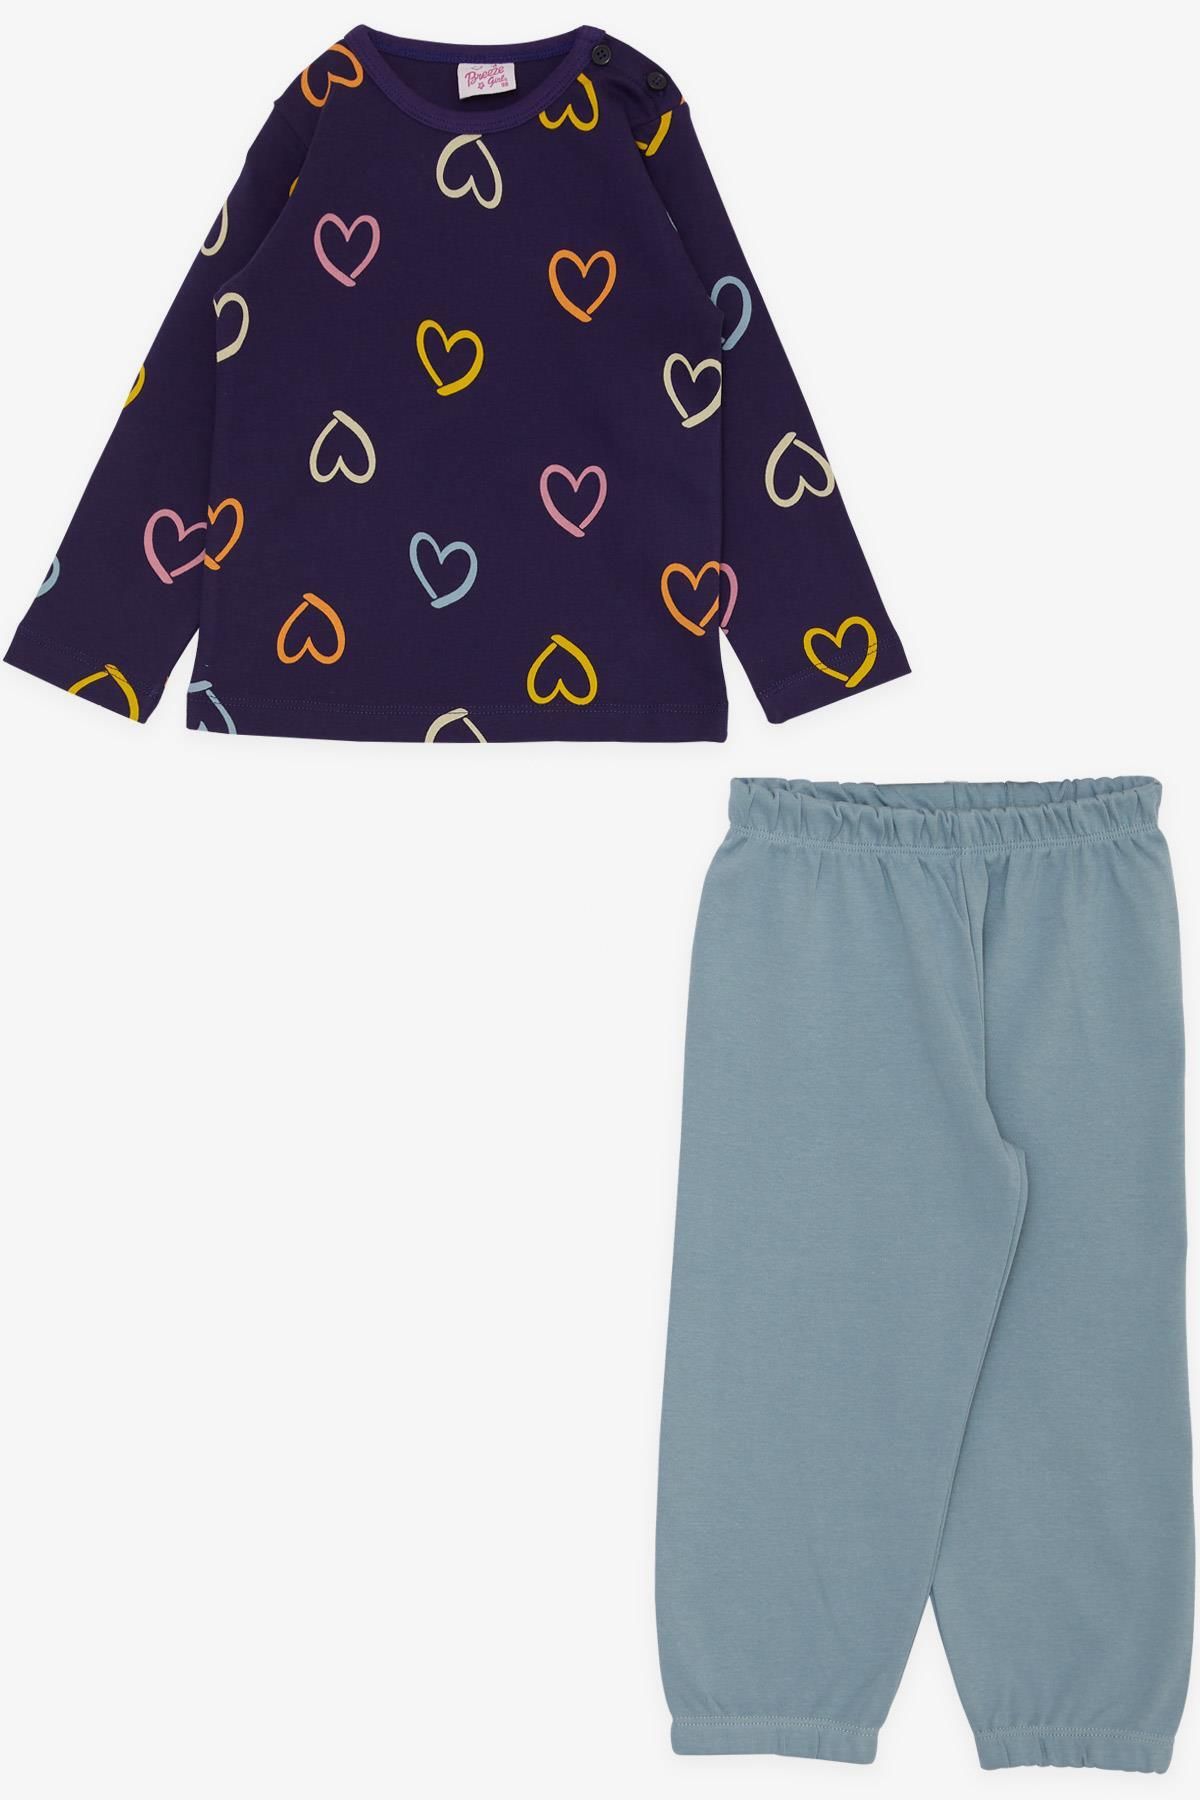 Breeze Kız Çocuk Pijama Takımı Renkli Kalp Desenli 1-4 Yaş, Mor